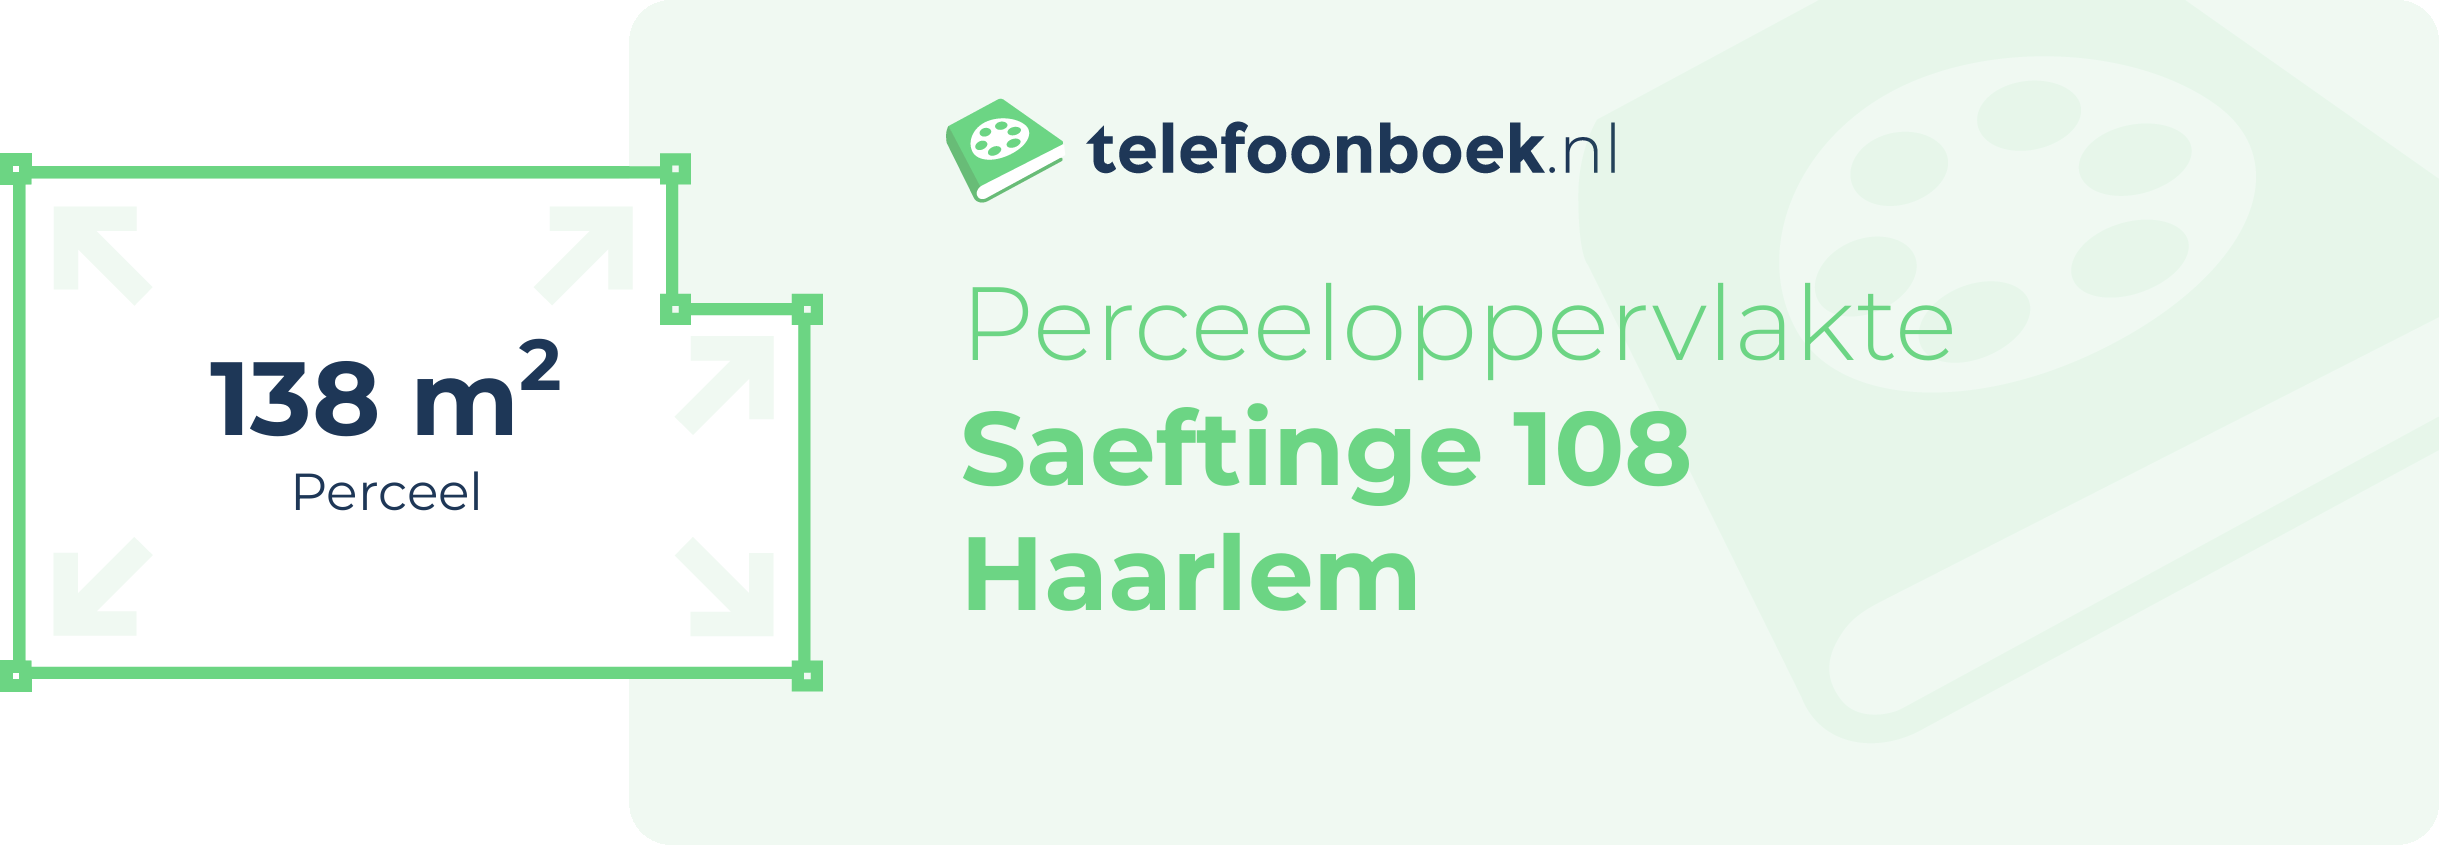 Perceeloppervlakte Saeftinge 108 Haarlem